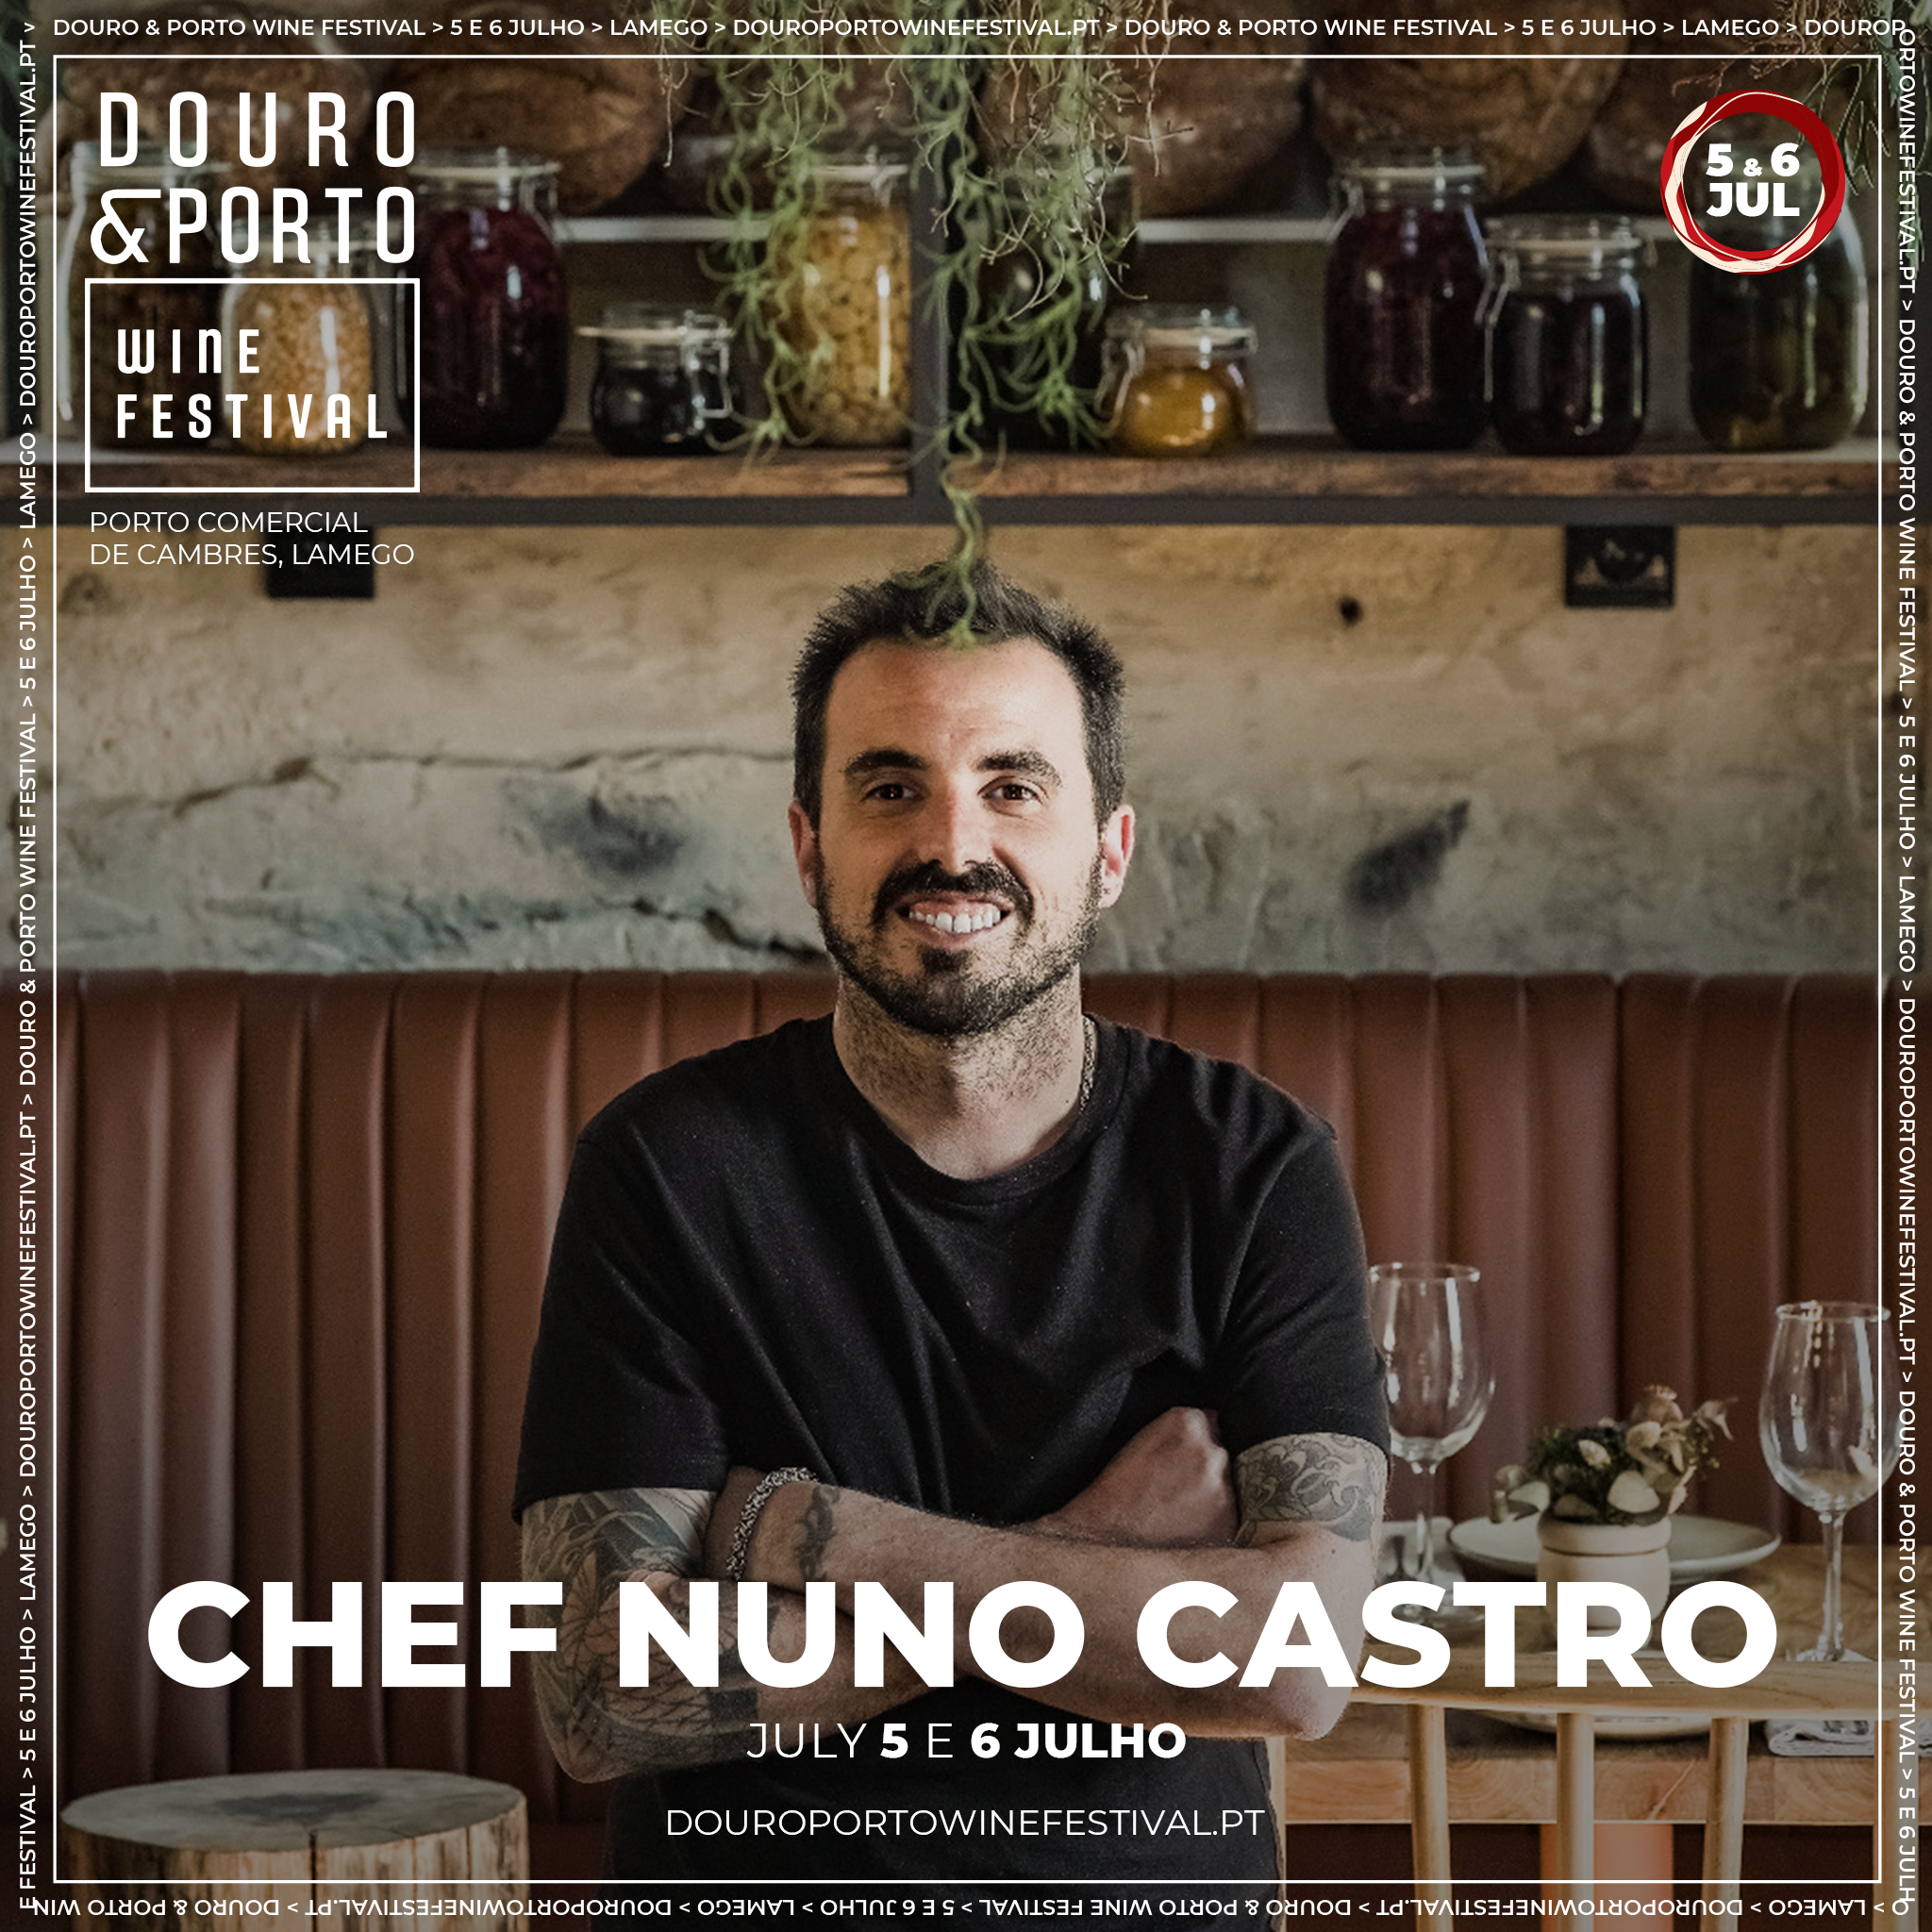 DOURO PORTO WINE FESTIVAL - CHEFF NUNO CASTRO